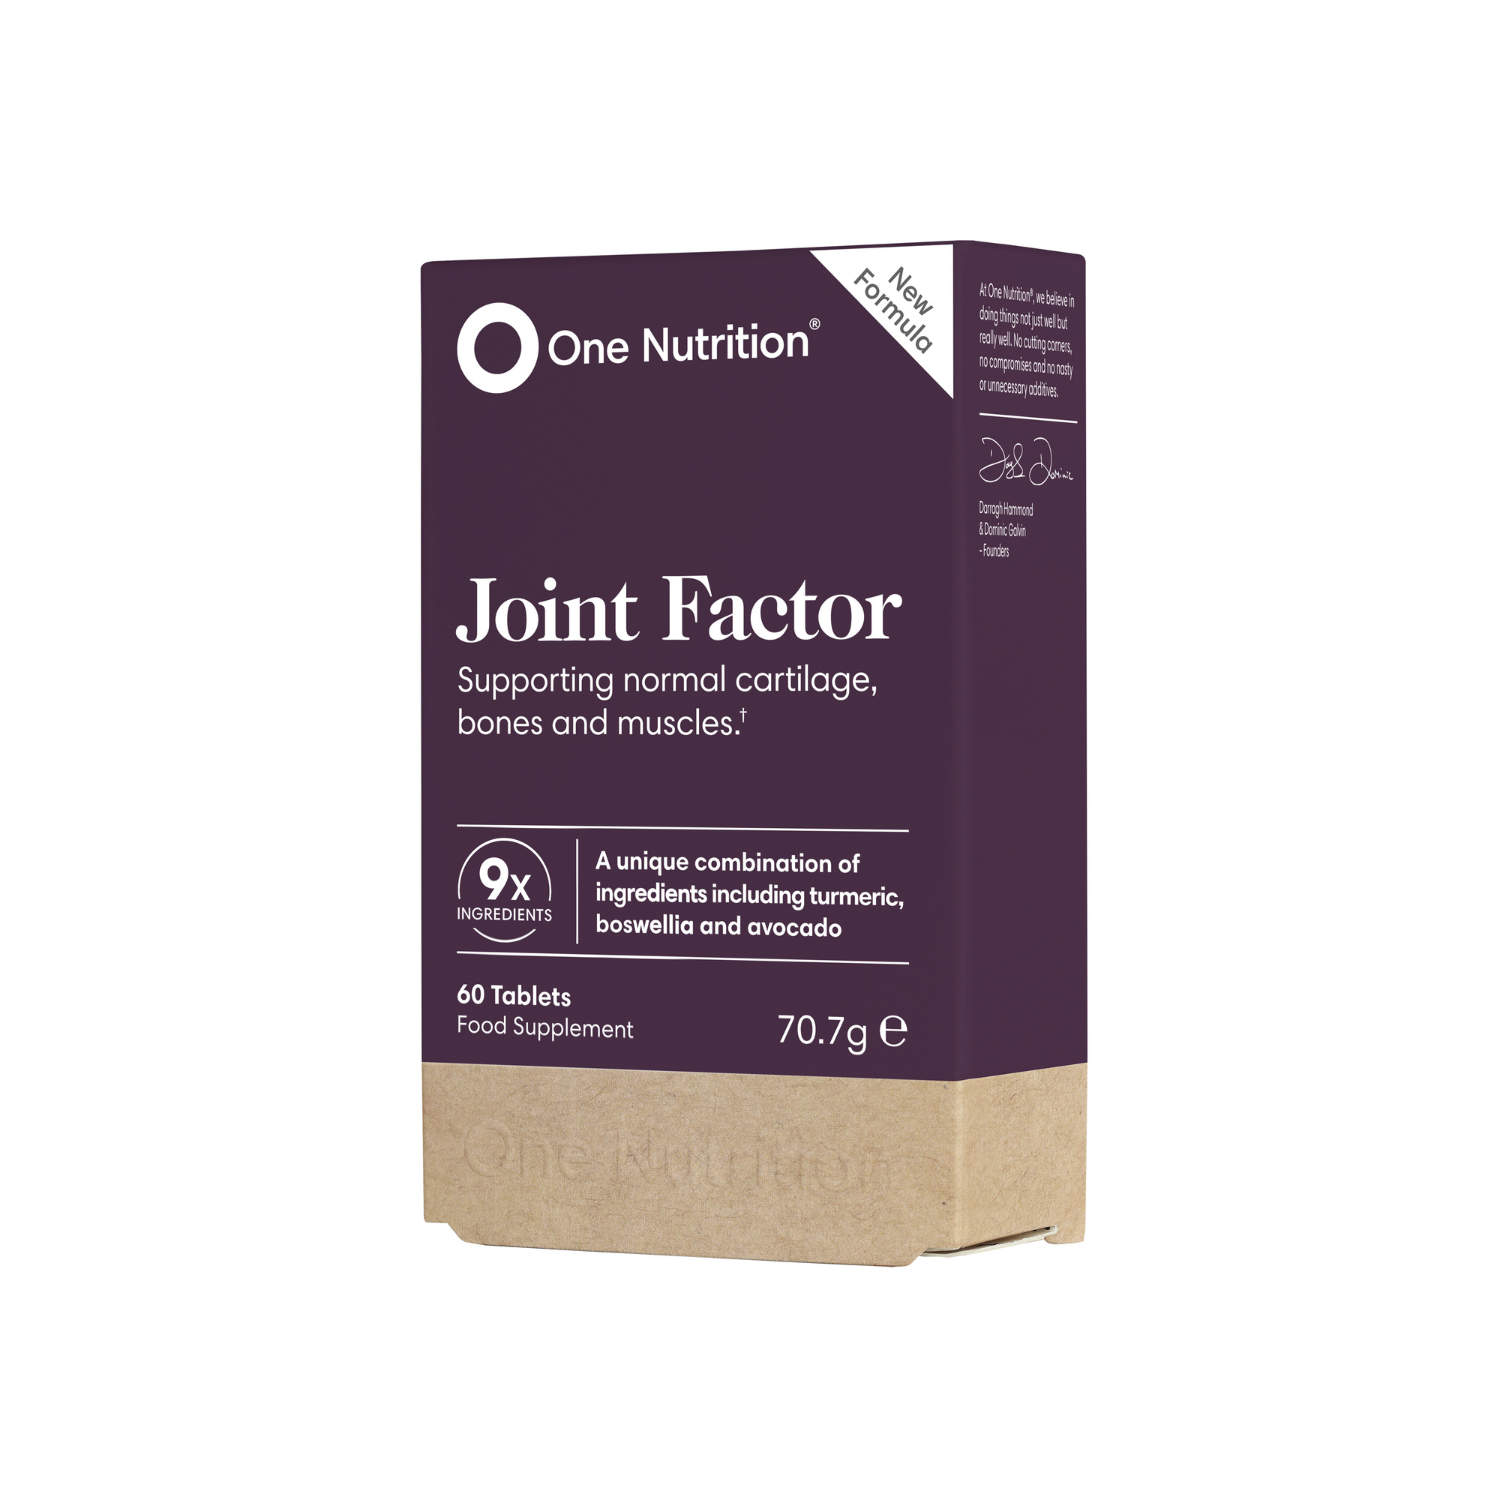 One Nutrition "Joint Factor" kremzlėms, kaulams, jungiamojo audinio ir raumenų būklei